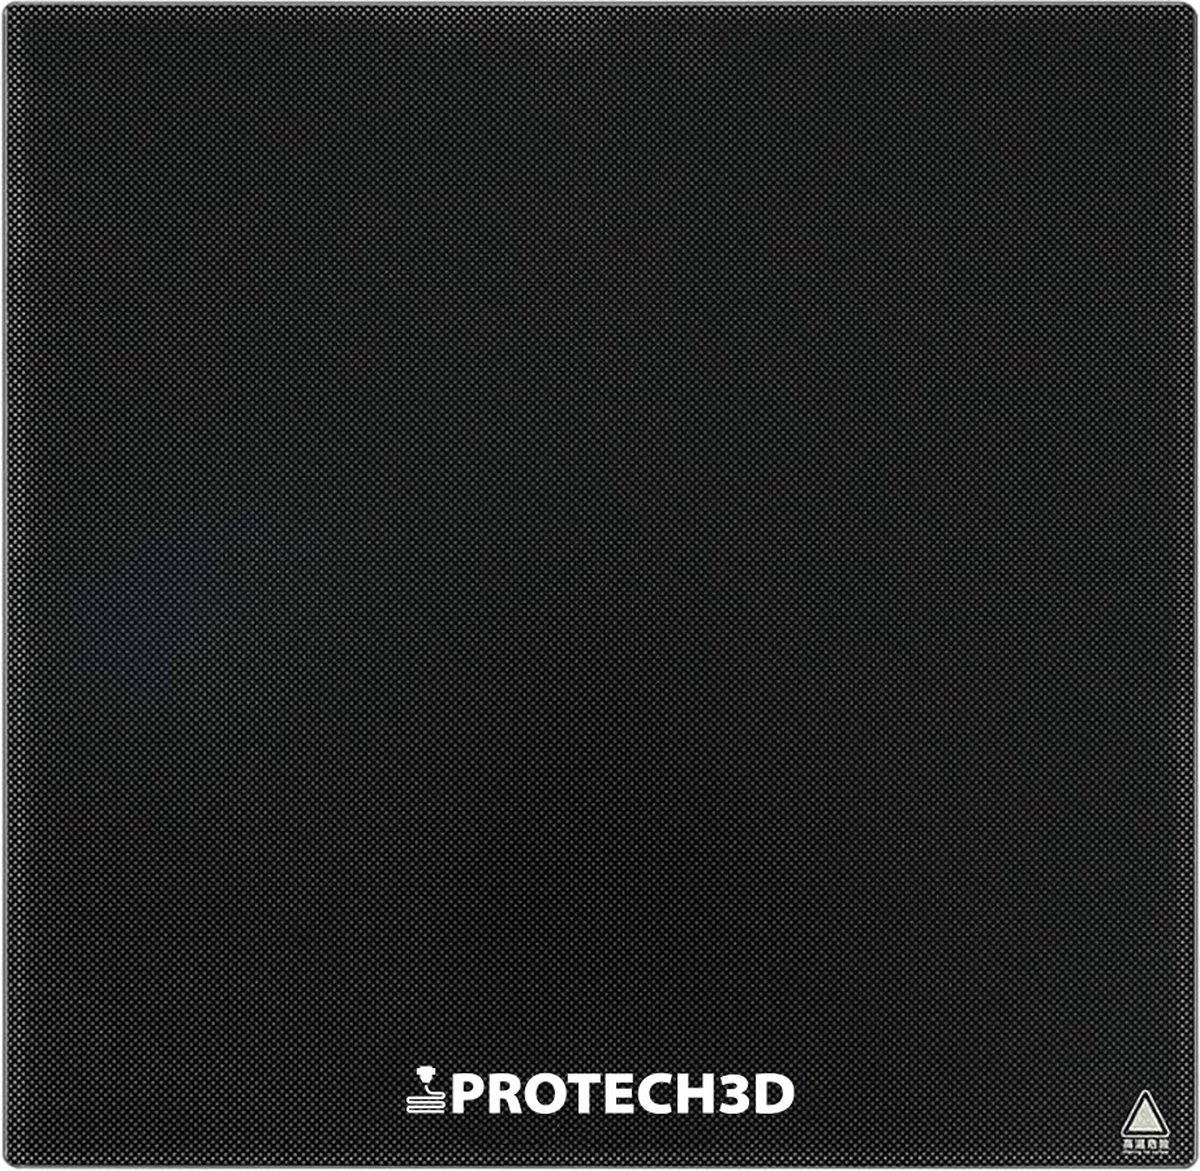 ProTech3D - Ultrabase glass plate 235x235mm